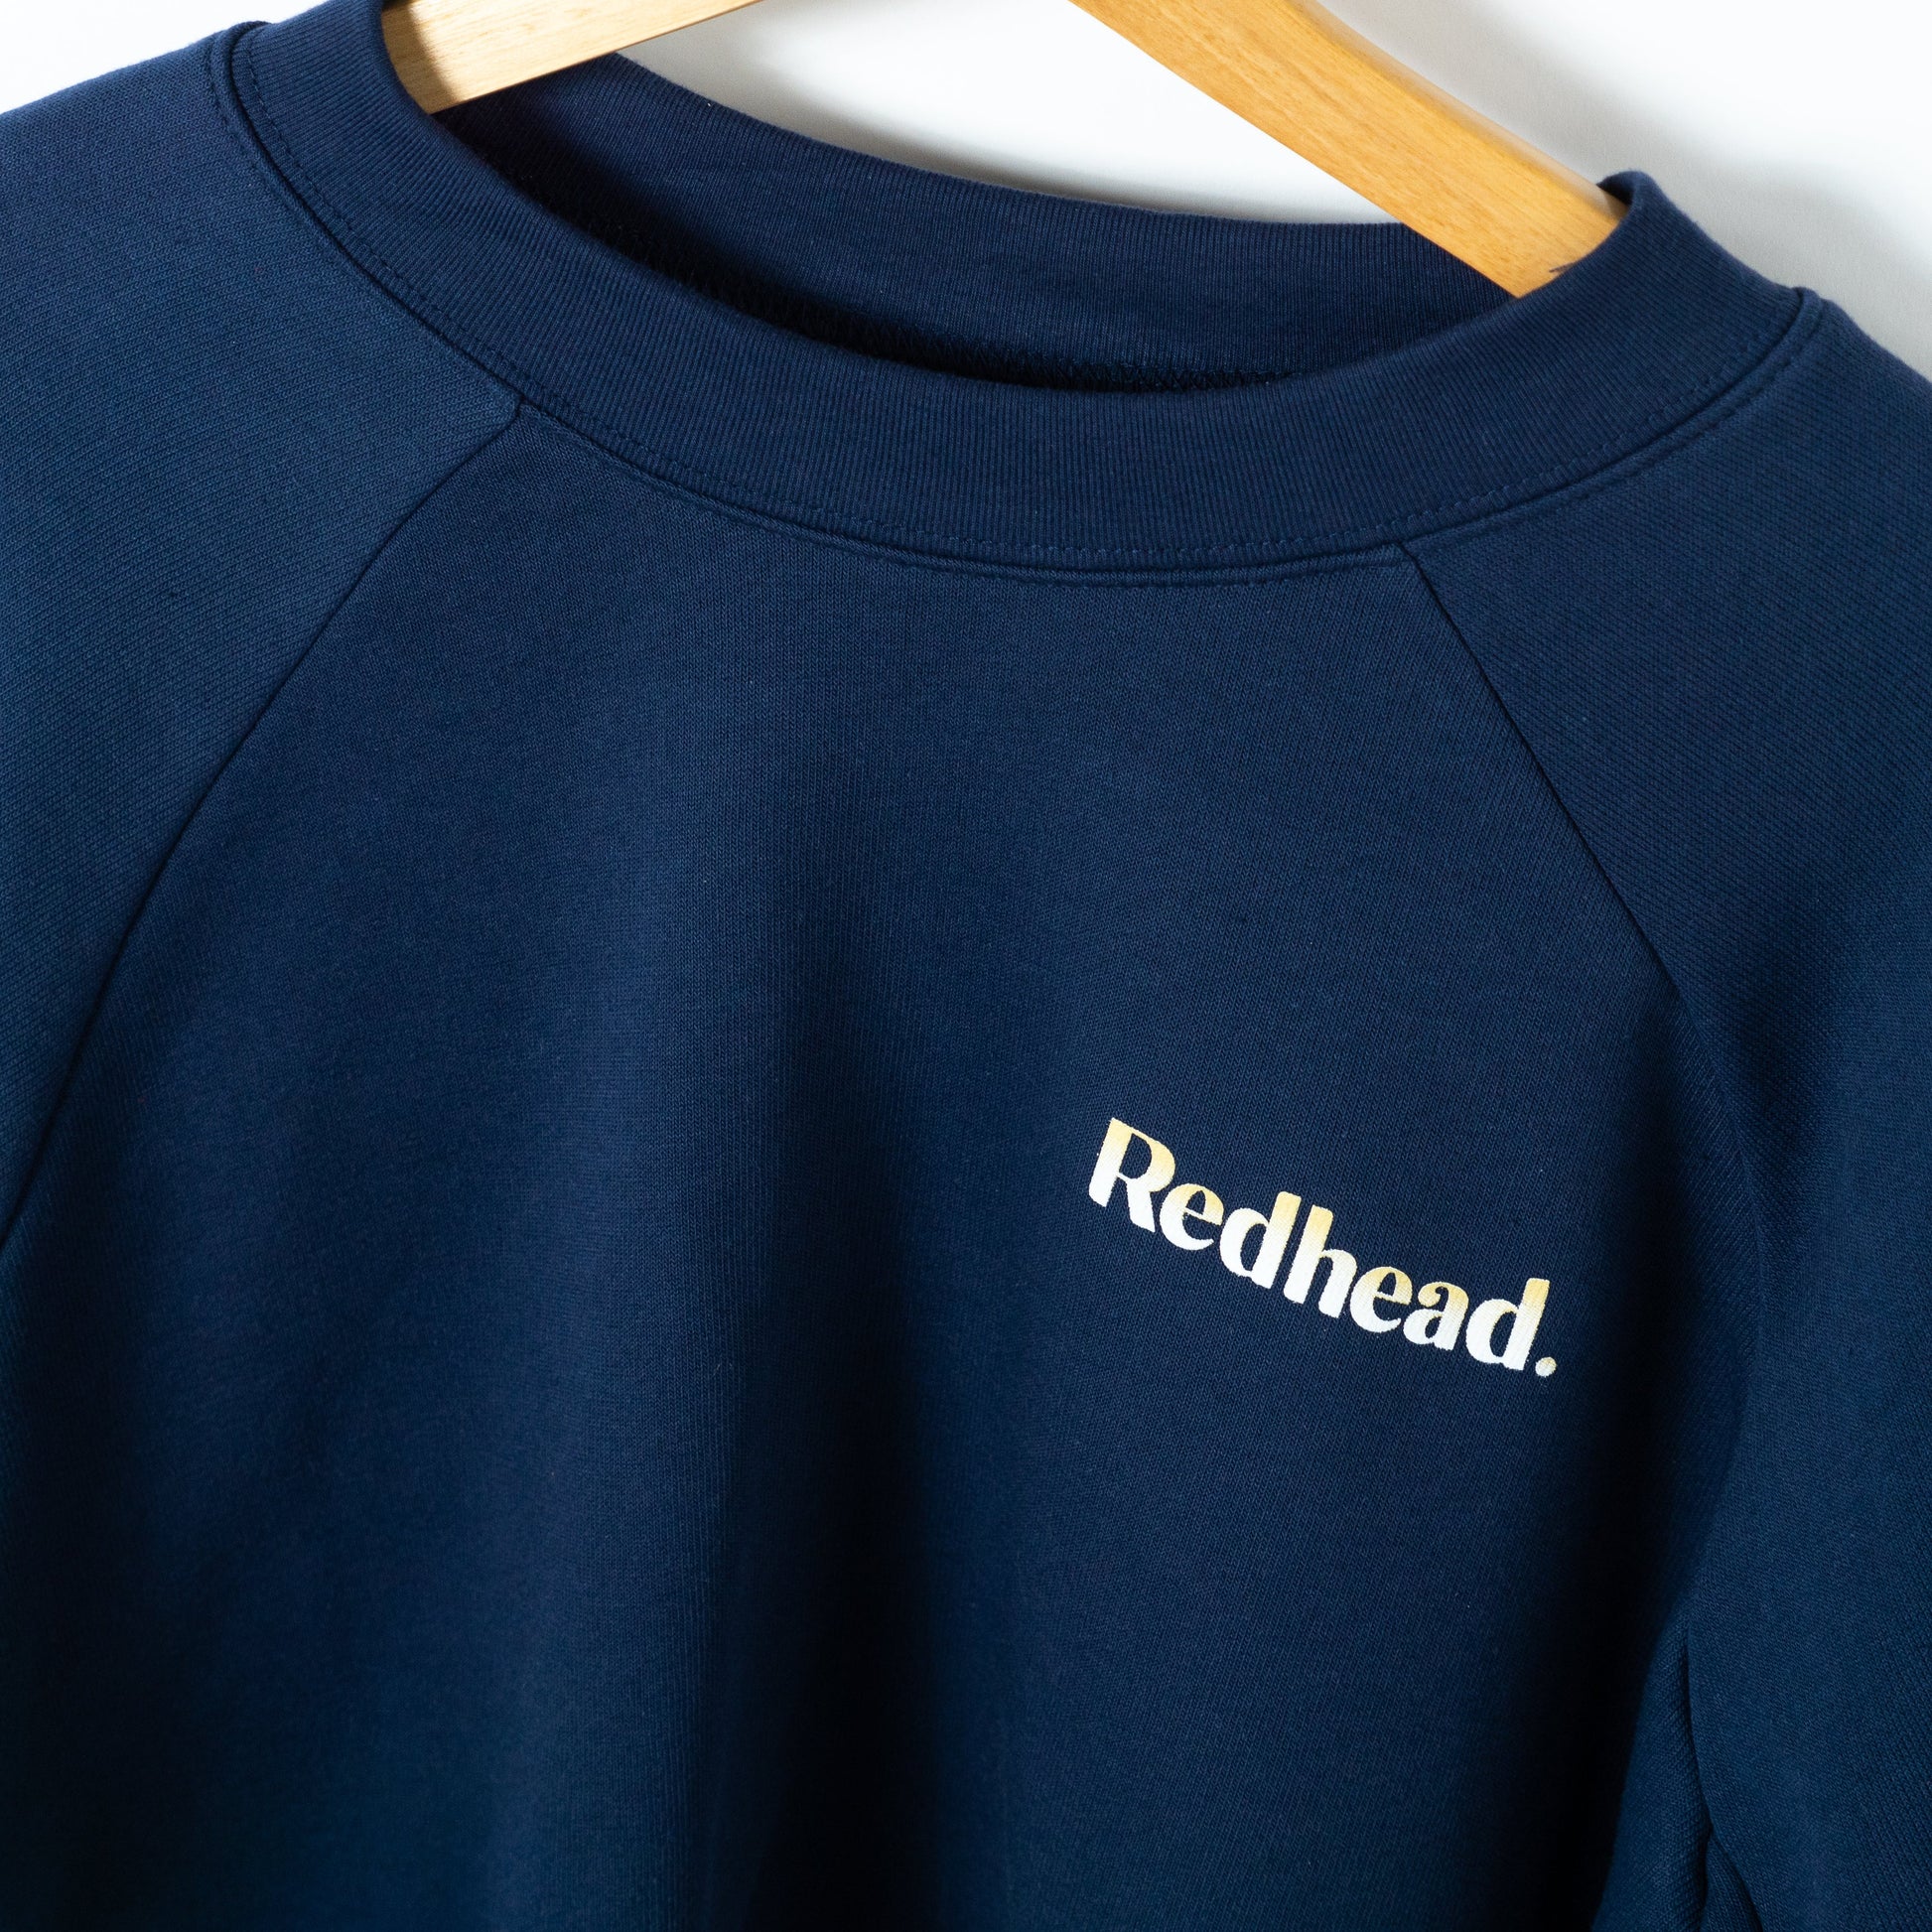 NEW! Redhead. Fleece Sweatshirt - Navy